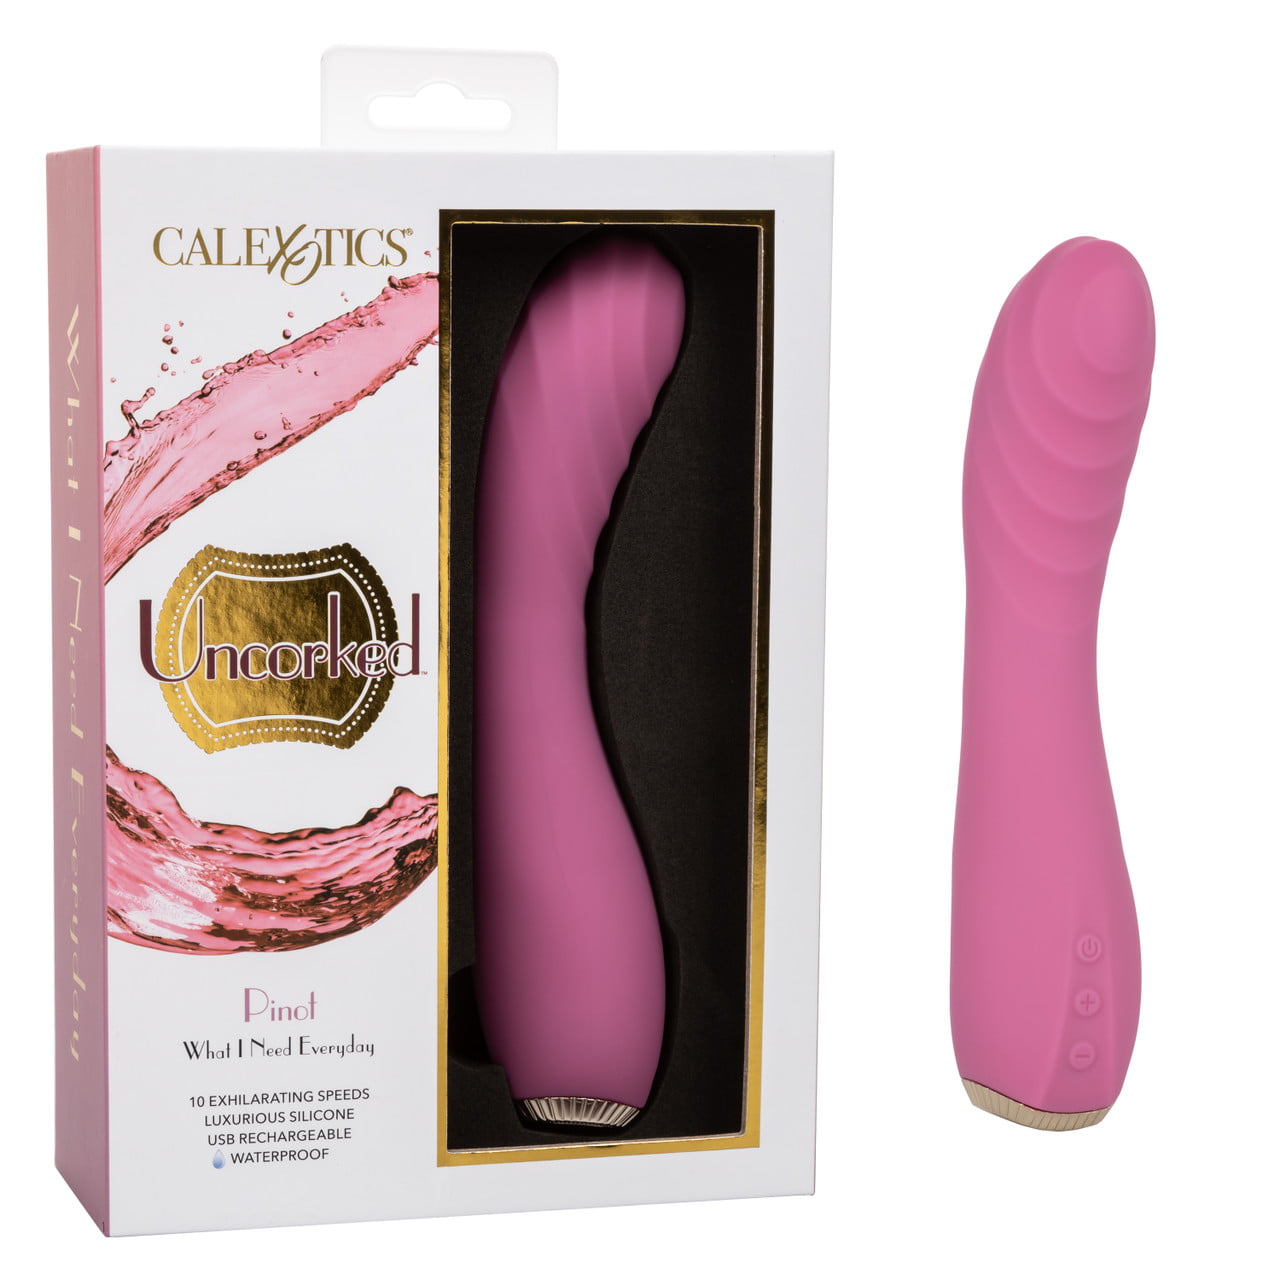 CalExotics Uncorked Pinot Pinot-shaped vibrator Sex toy